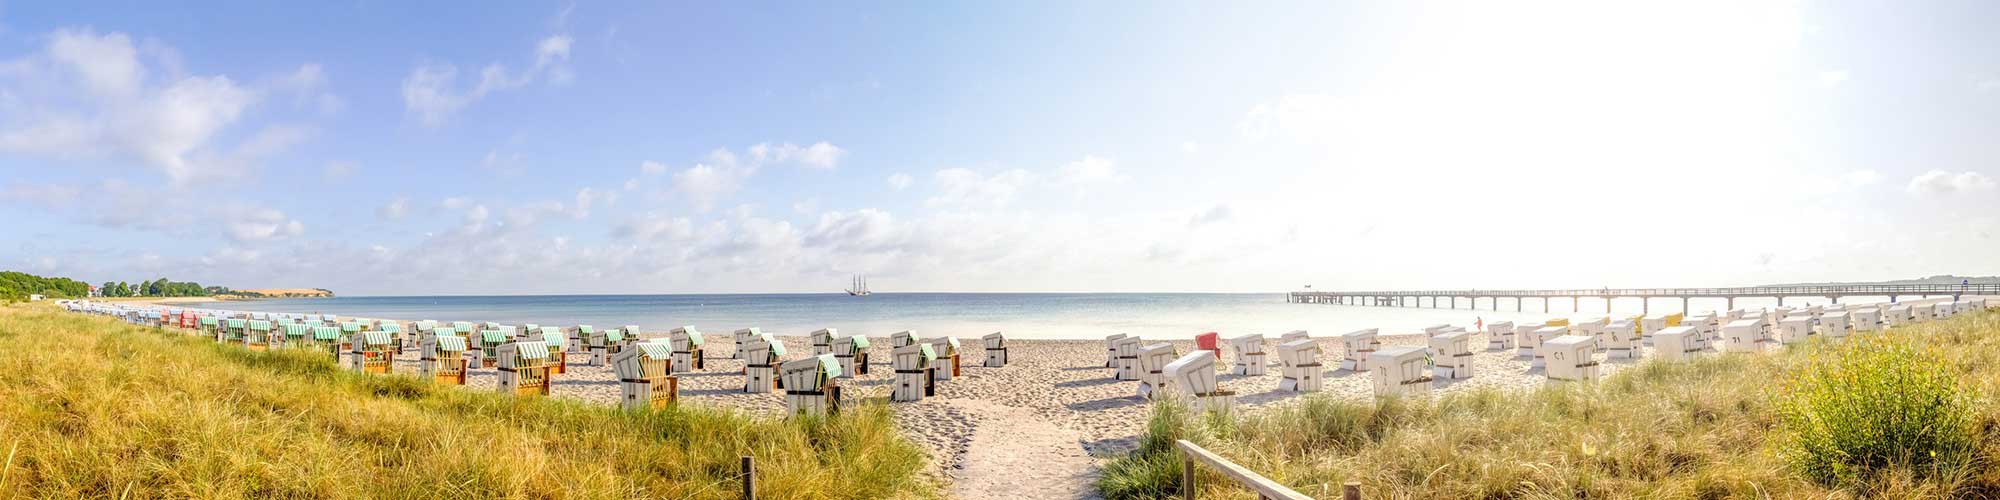 Panorama Bild mit Blick auf den Strand mit Strandkörben und die Ostsee